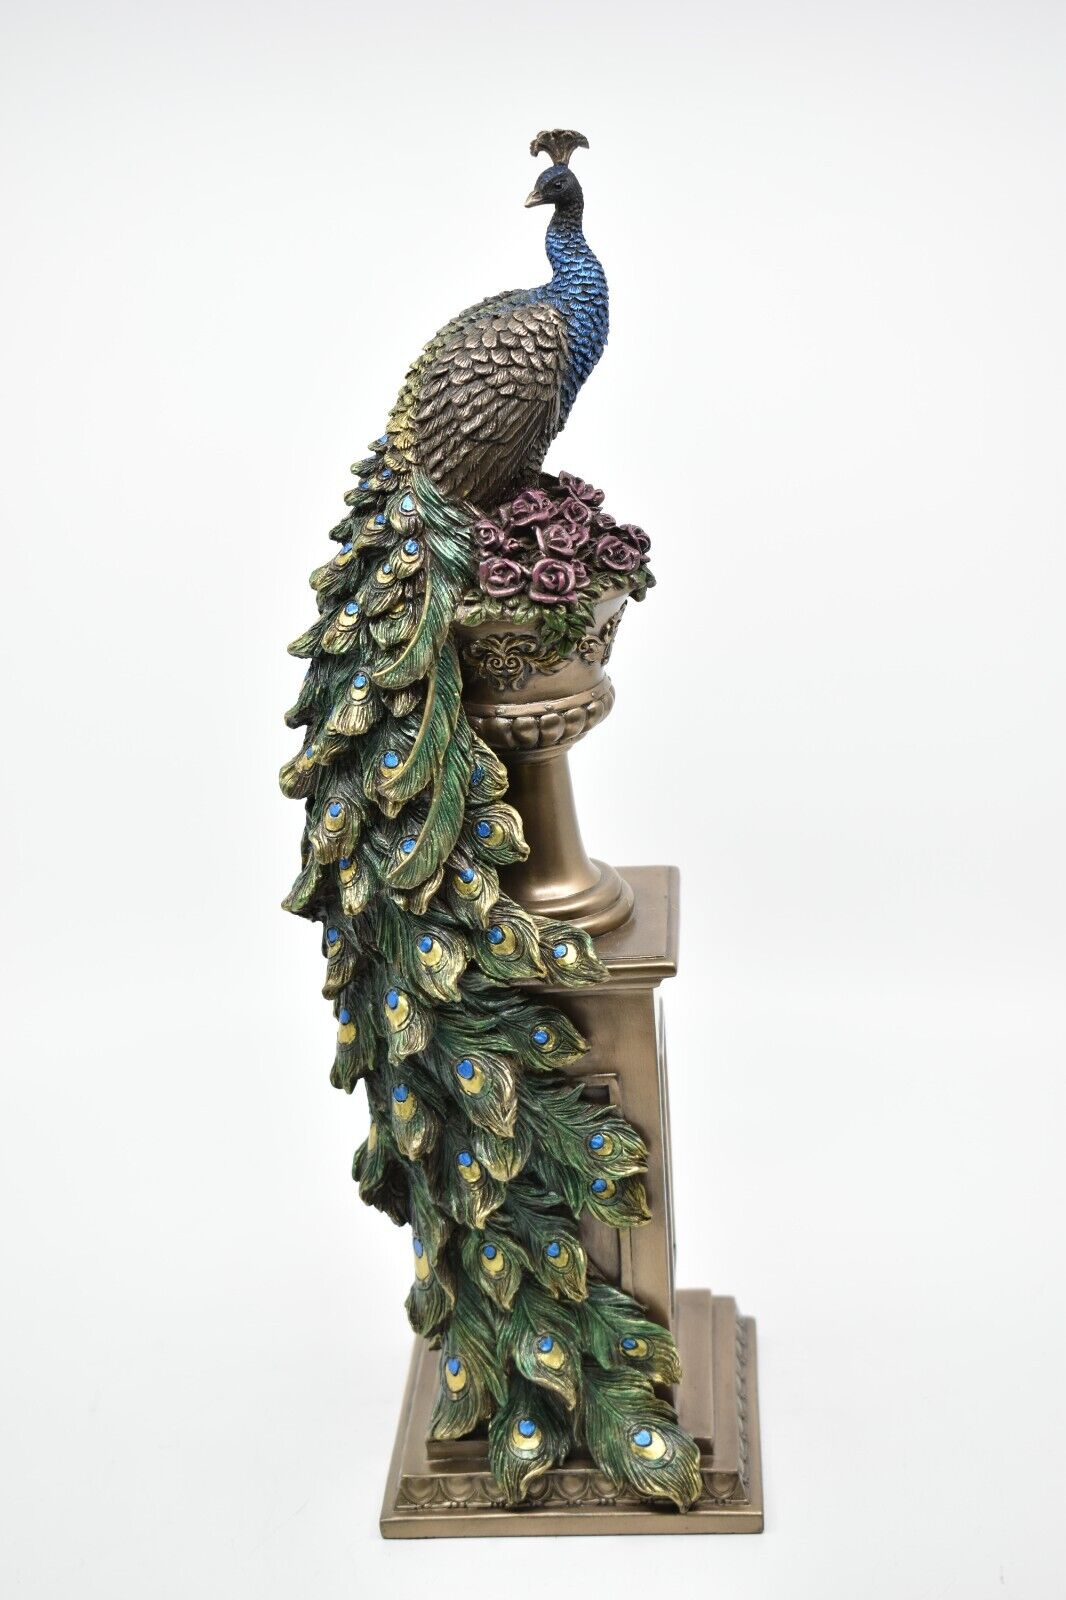 Peacock Figurine on a Vase, Vintage Peacock Figure